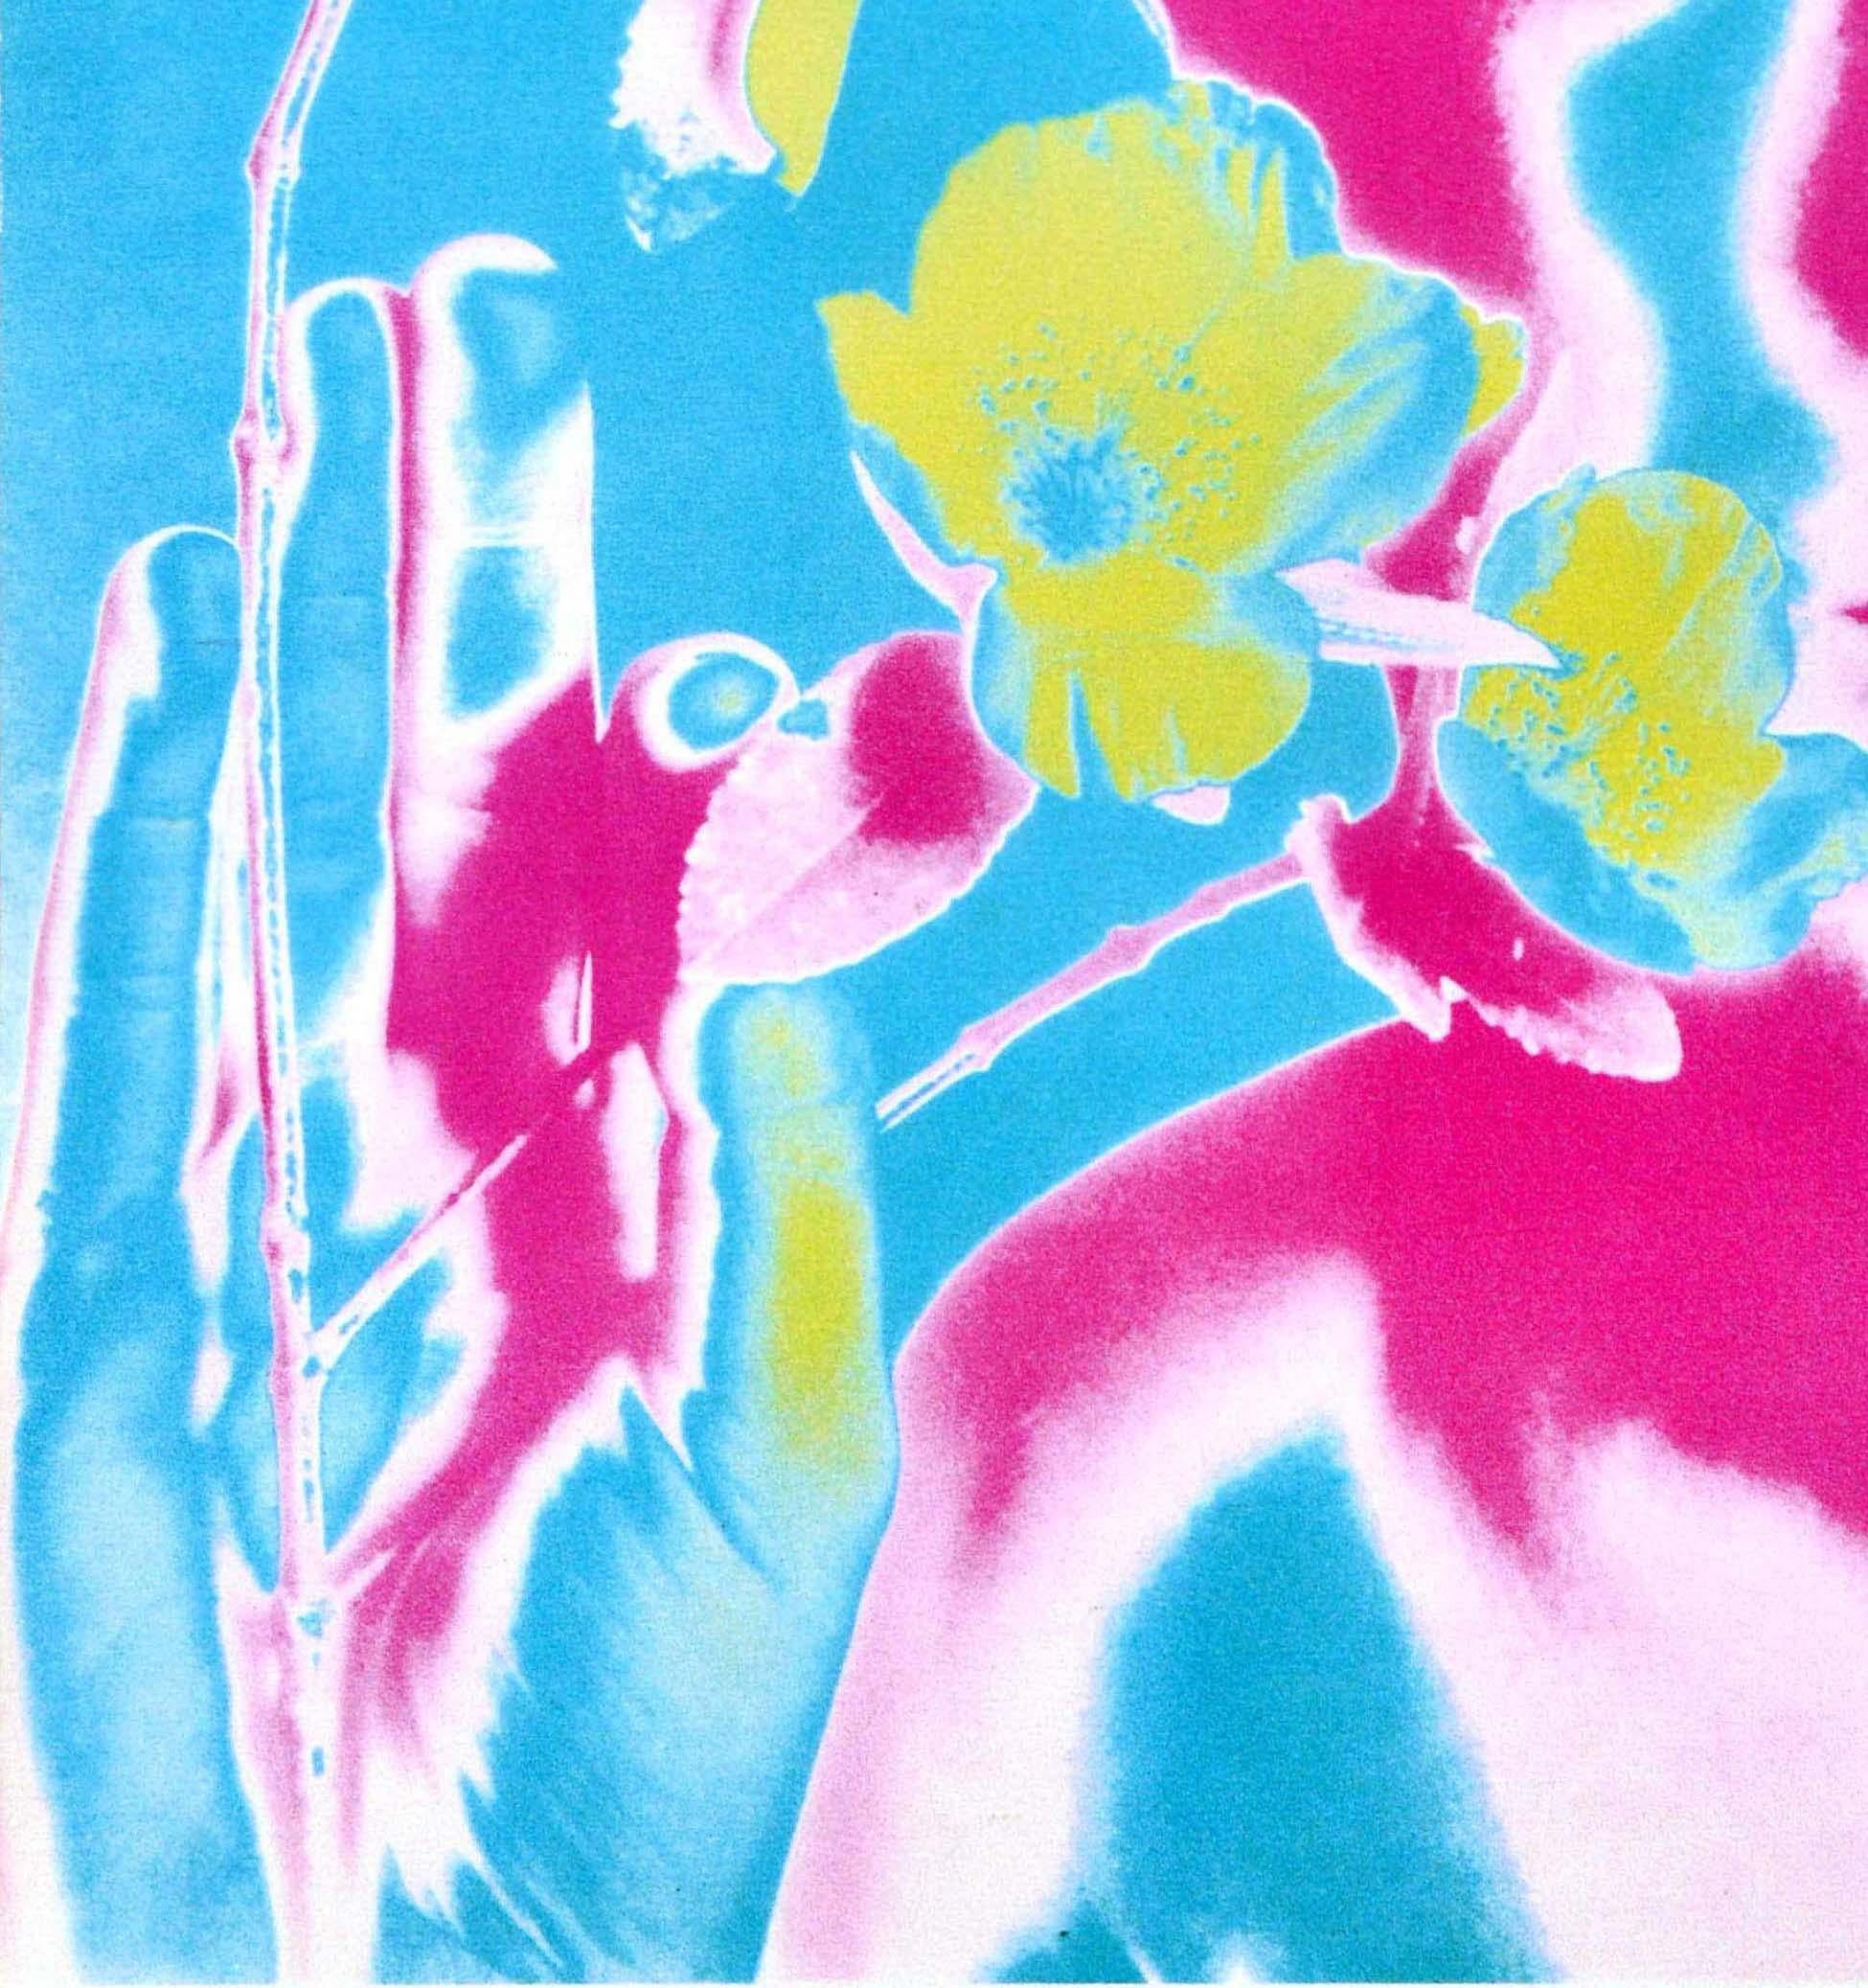 Original Vintage Music Advertising Poster Beatles Paul McCartney Flower Avedon - Gray Print by Richard Avedon